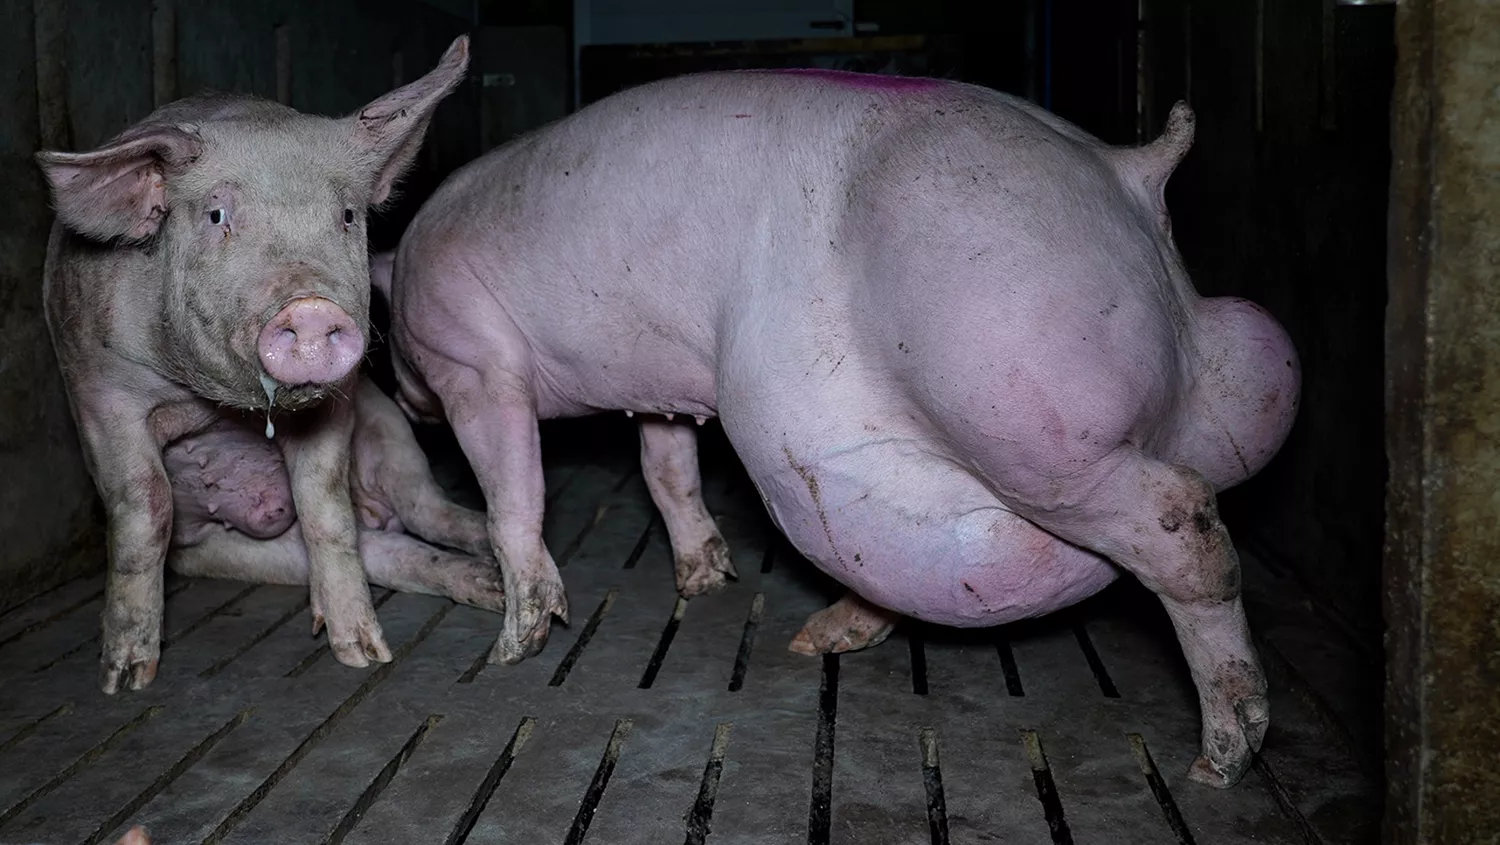 La OBA denuncia otra ‘granja del terror’ en Araúzo de Torre (Burgos) por maltrato animal y publicidad engañosa